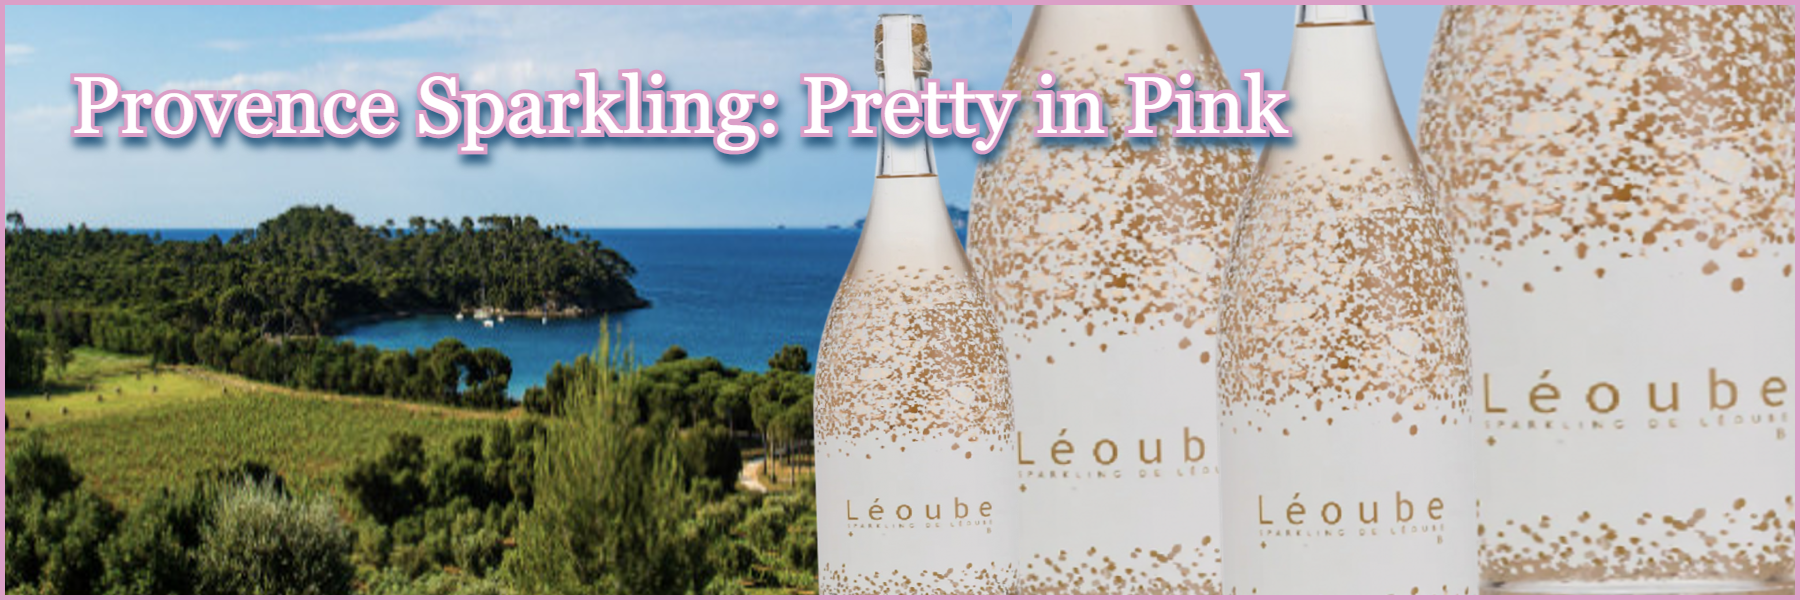 Chateau Leoube - Sparkling Provence Rosé